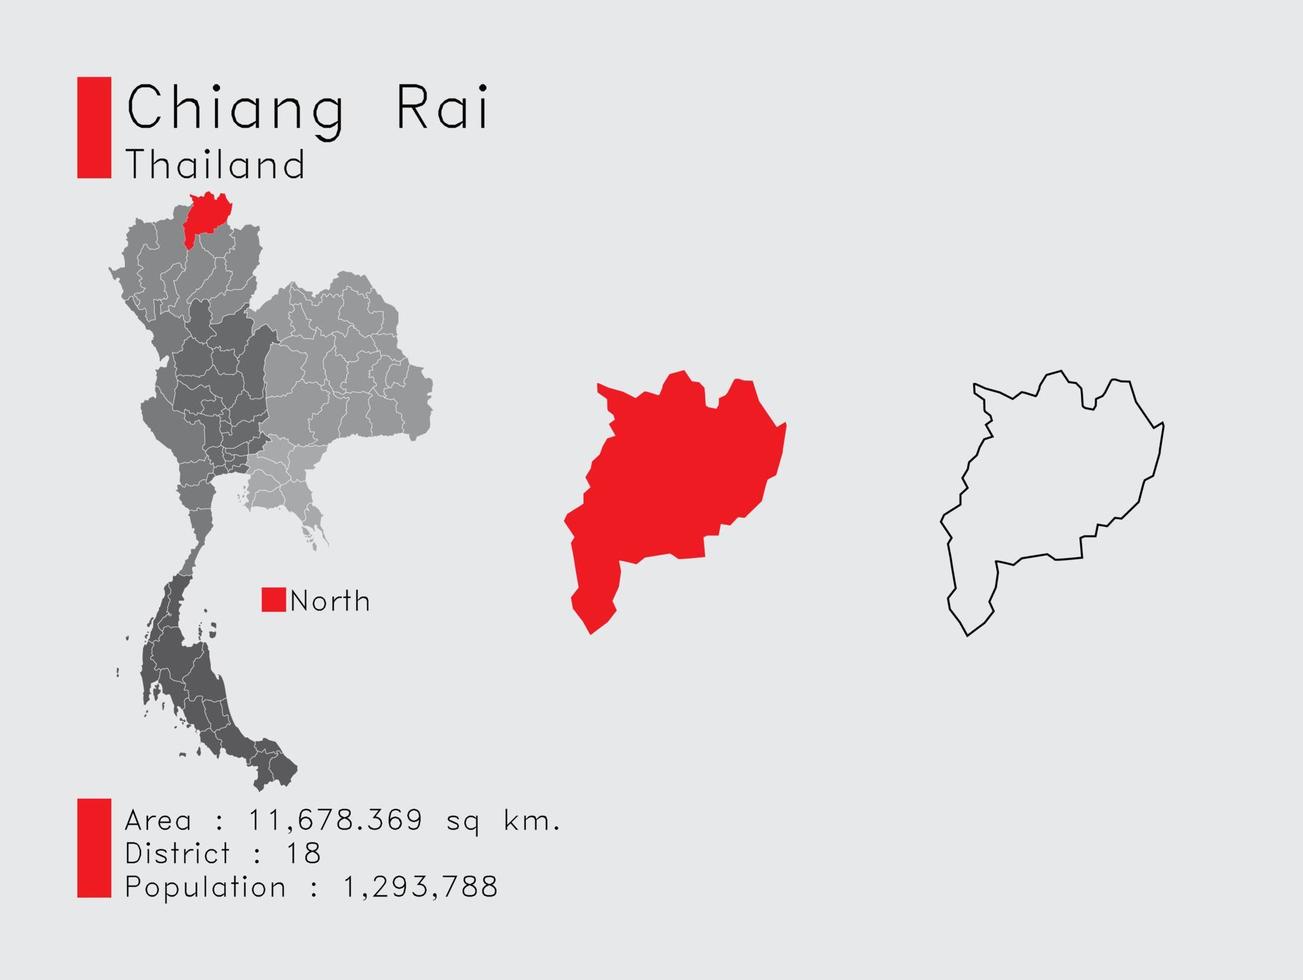 chiang rai position in thailand eine reihe von infografikelementen für die provinz. und Bereich Bezirk Bevölkerung und Gliederung. Vektor mit grauem Hintergrund.